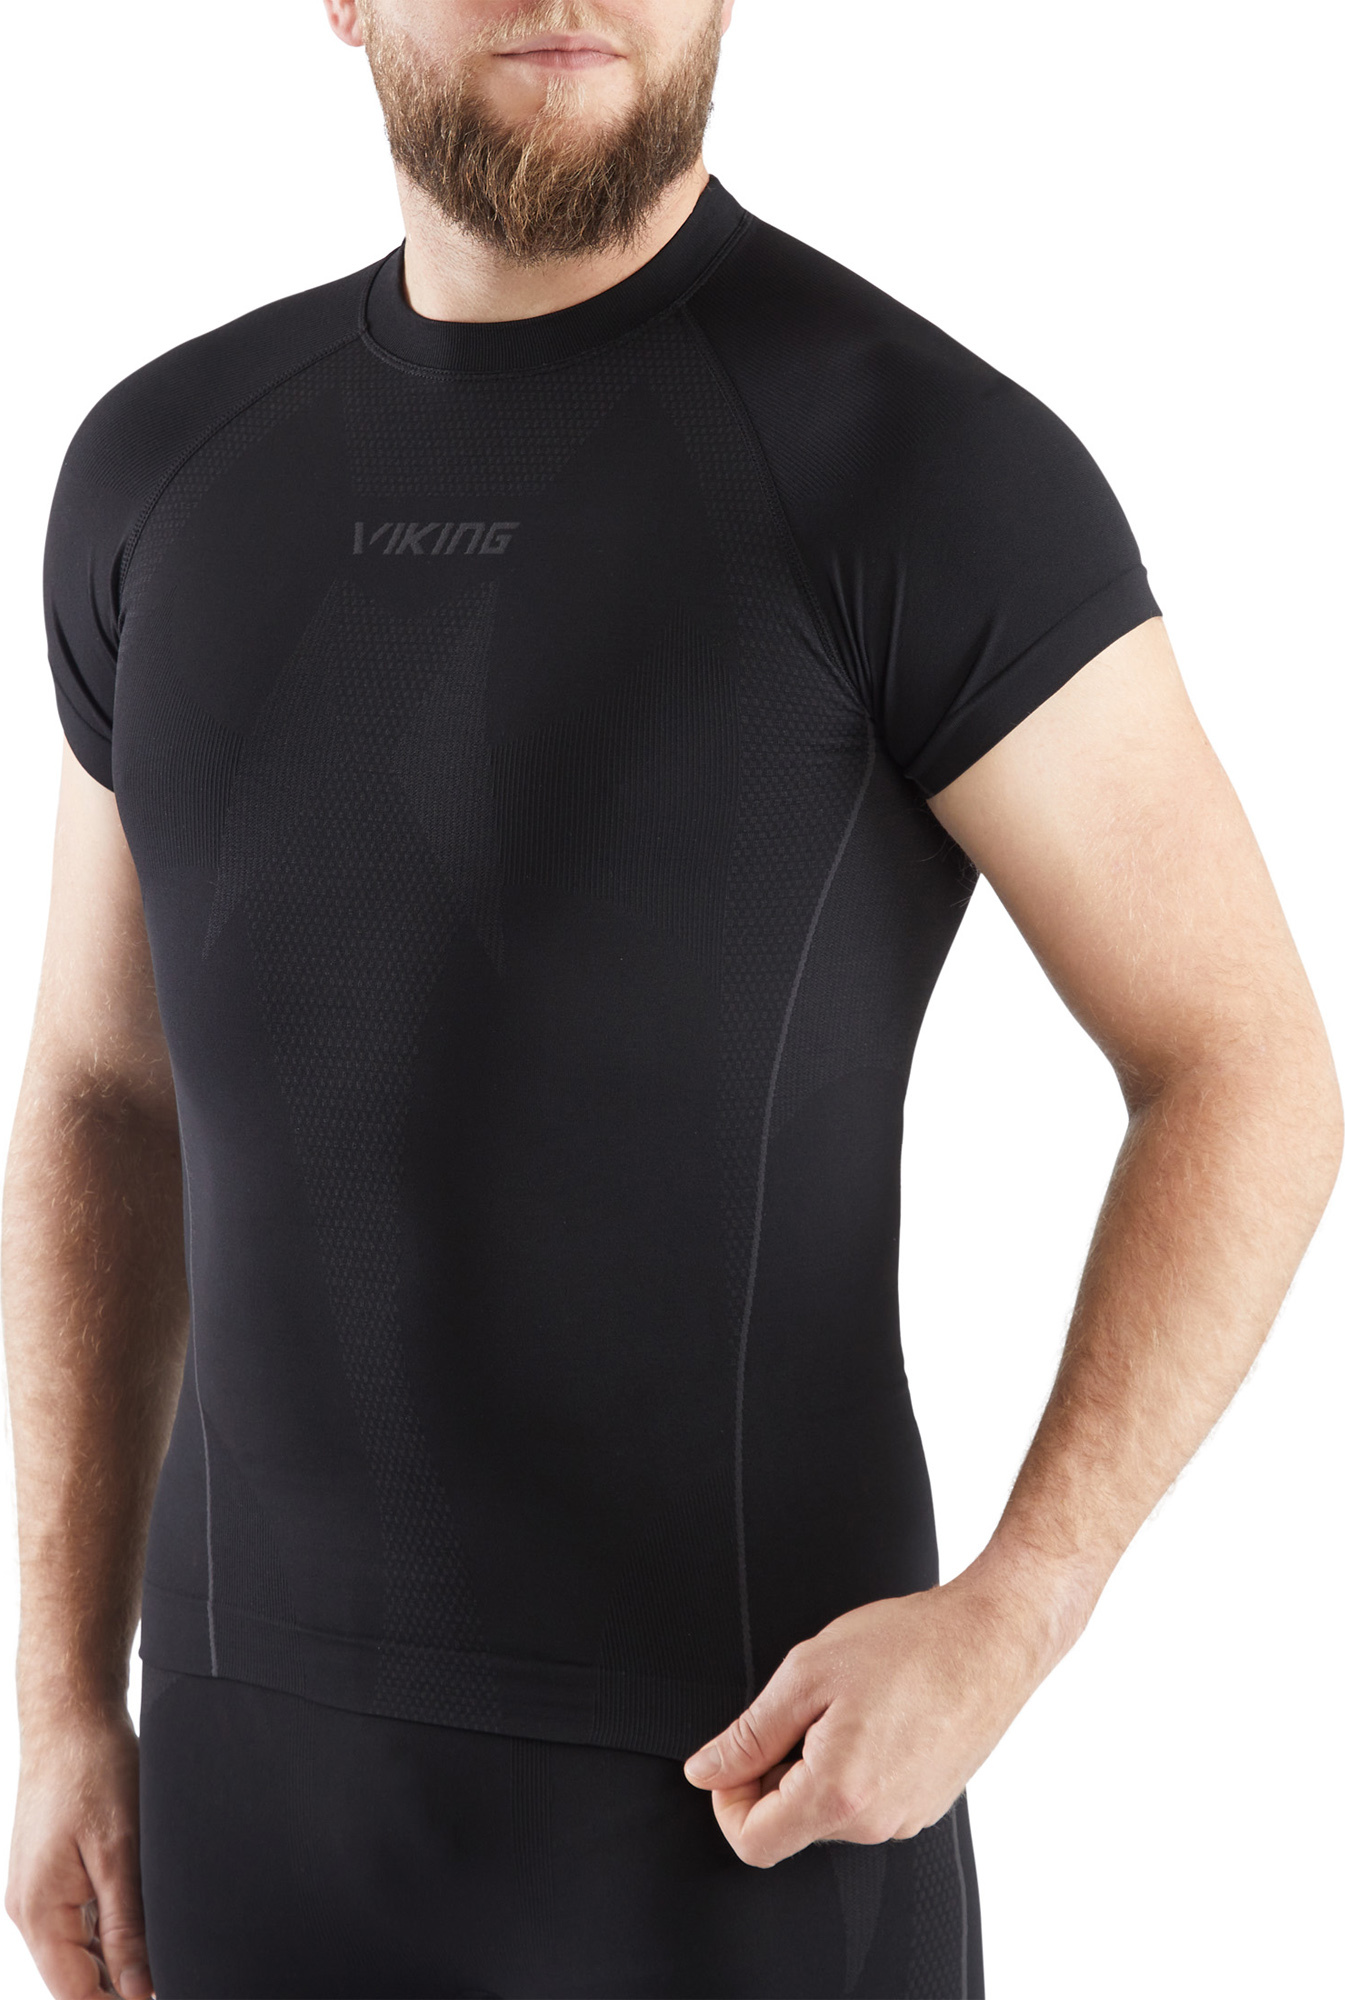 Pánské triko s krátkým rukávem VIKING Eiger Top černá Velikost: M